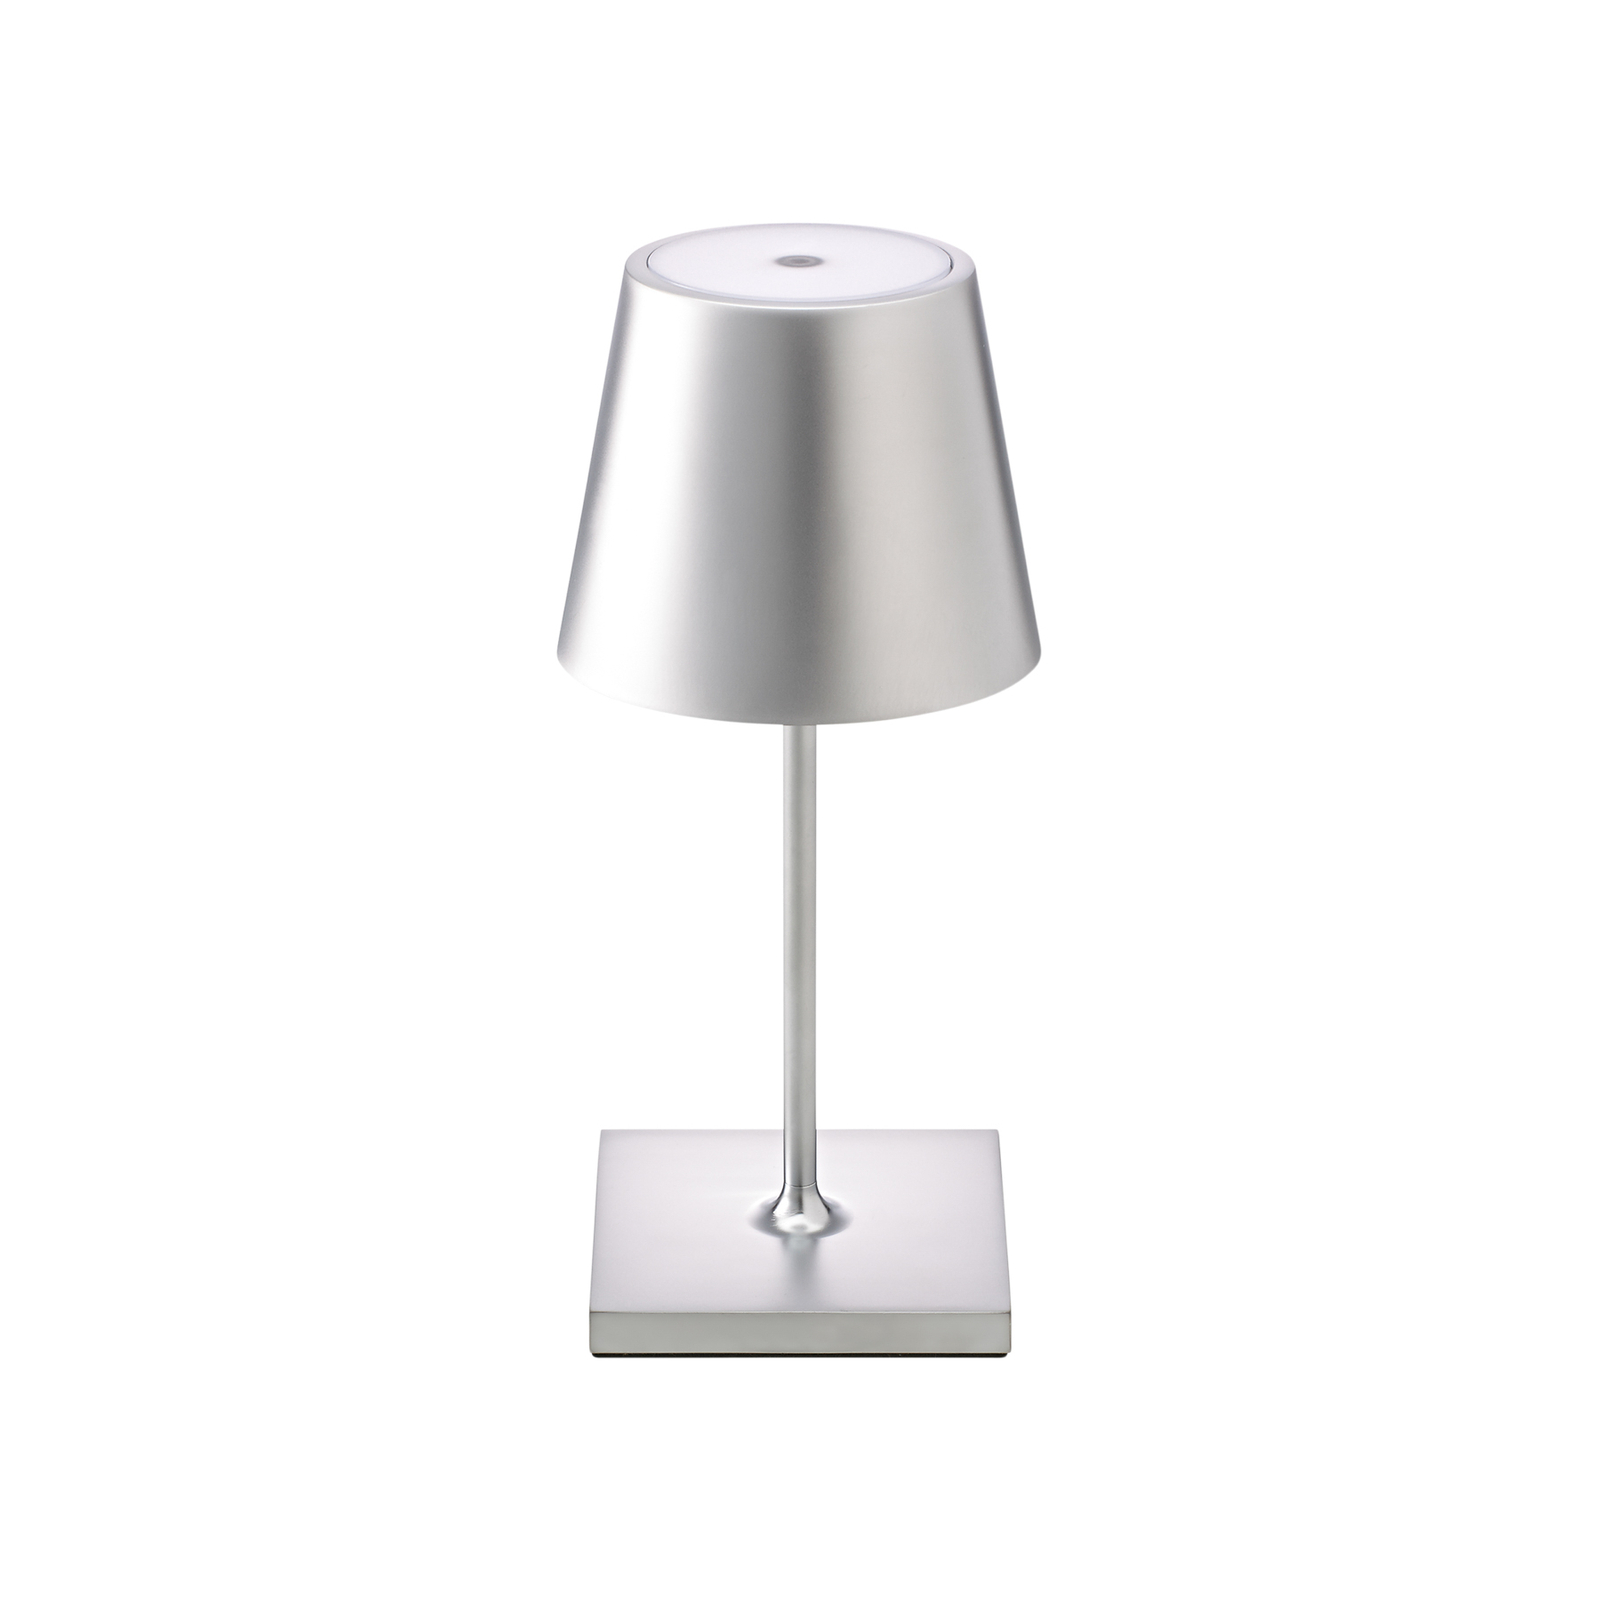 Nuindie mini LED dobíjecí stolní lampa, kulatá, USB-C, stříbrná barva